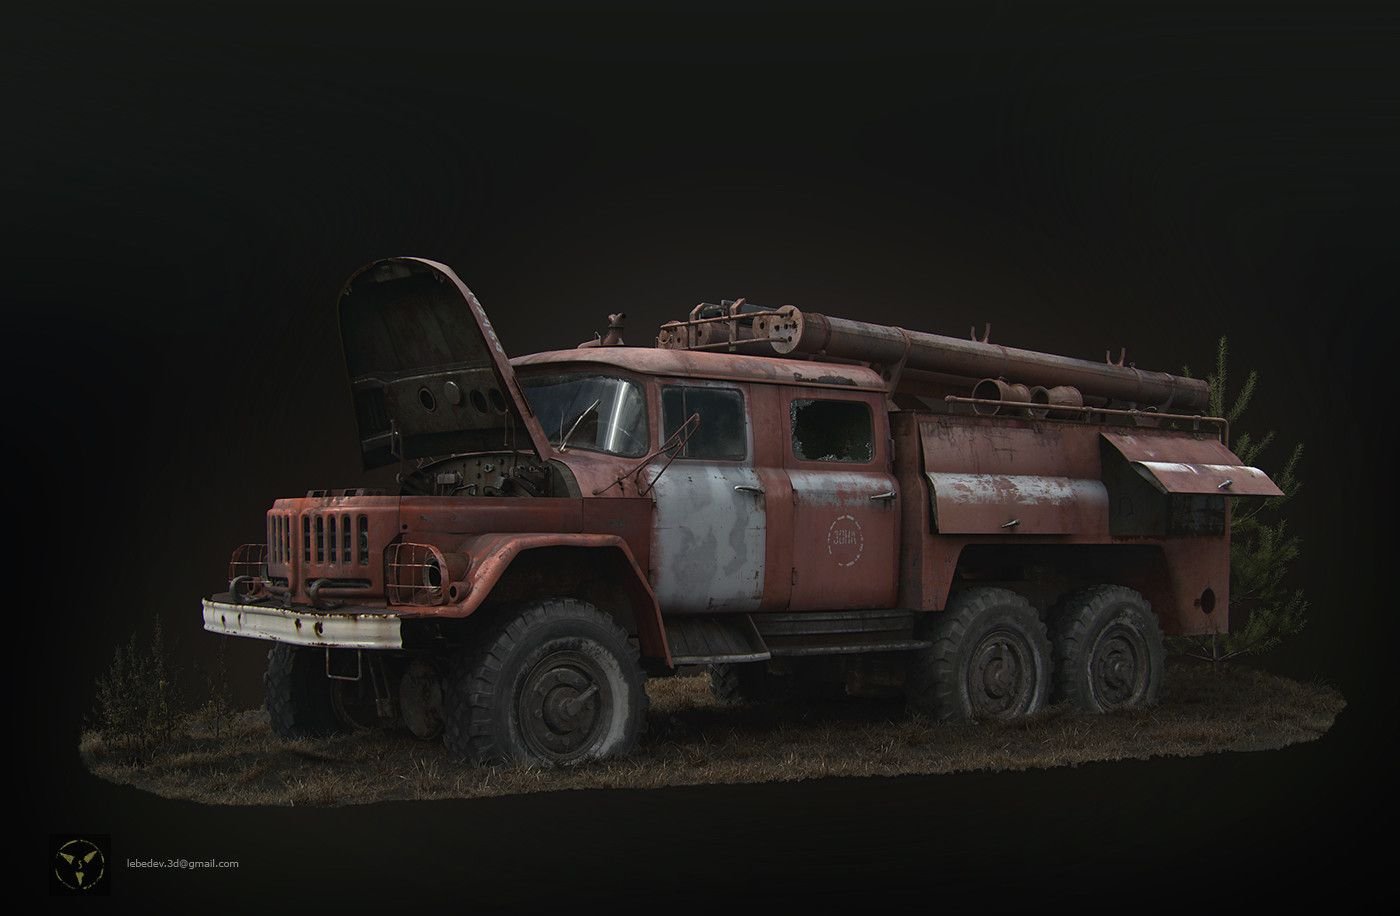 ЗИЛ 131 пожарный Чернобыль